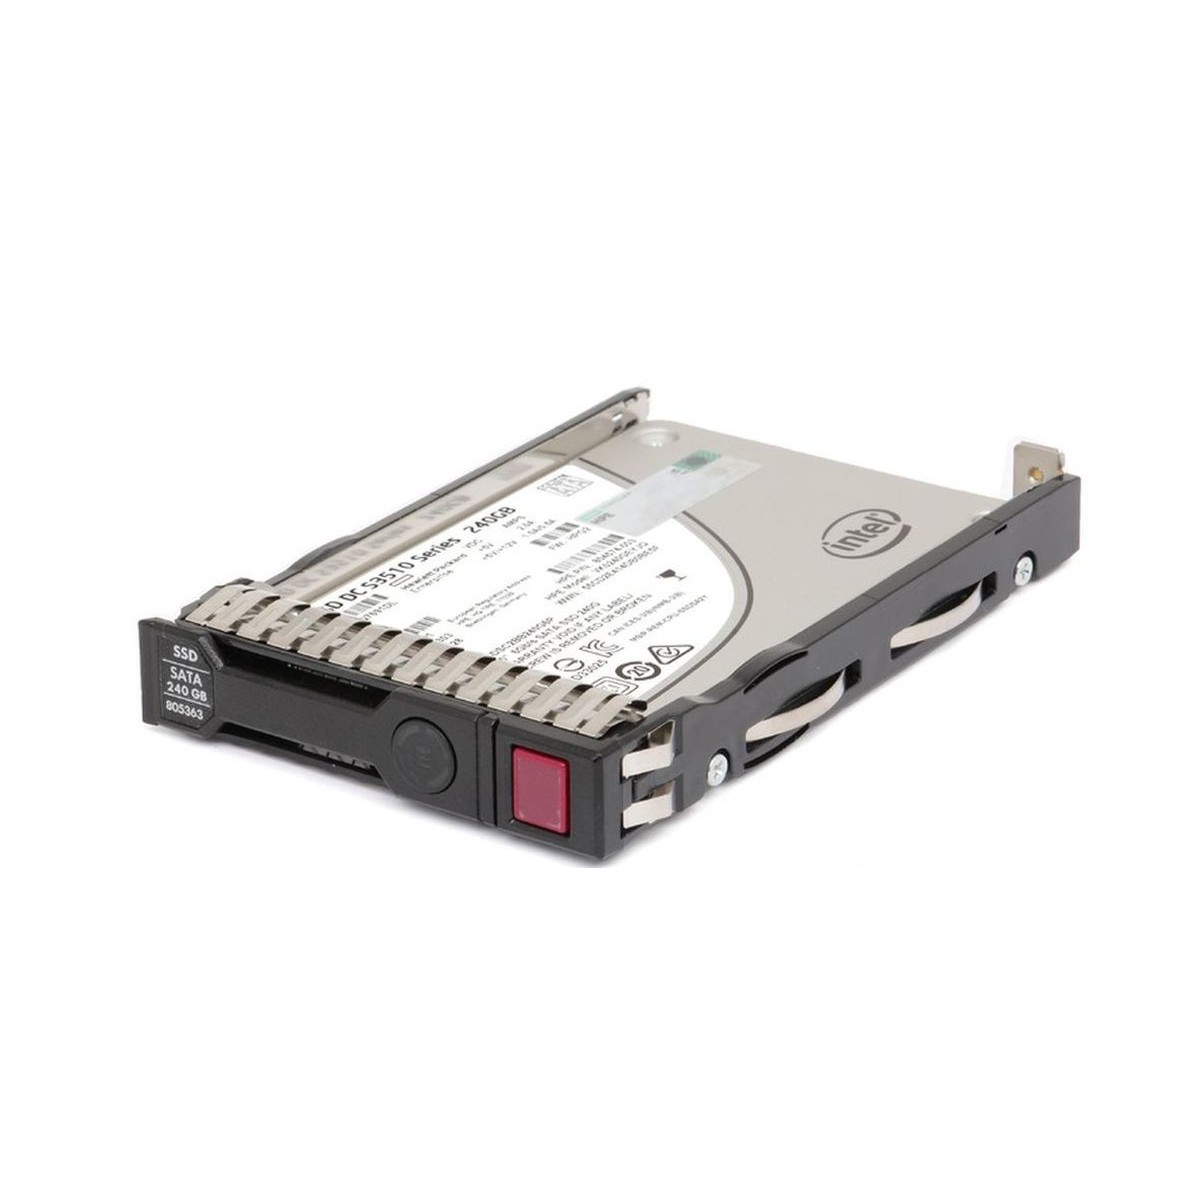 HP INTEL 240GB SATA SSD S3510 2,5 RAMKA 804574-003